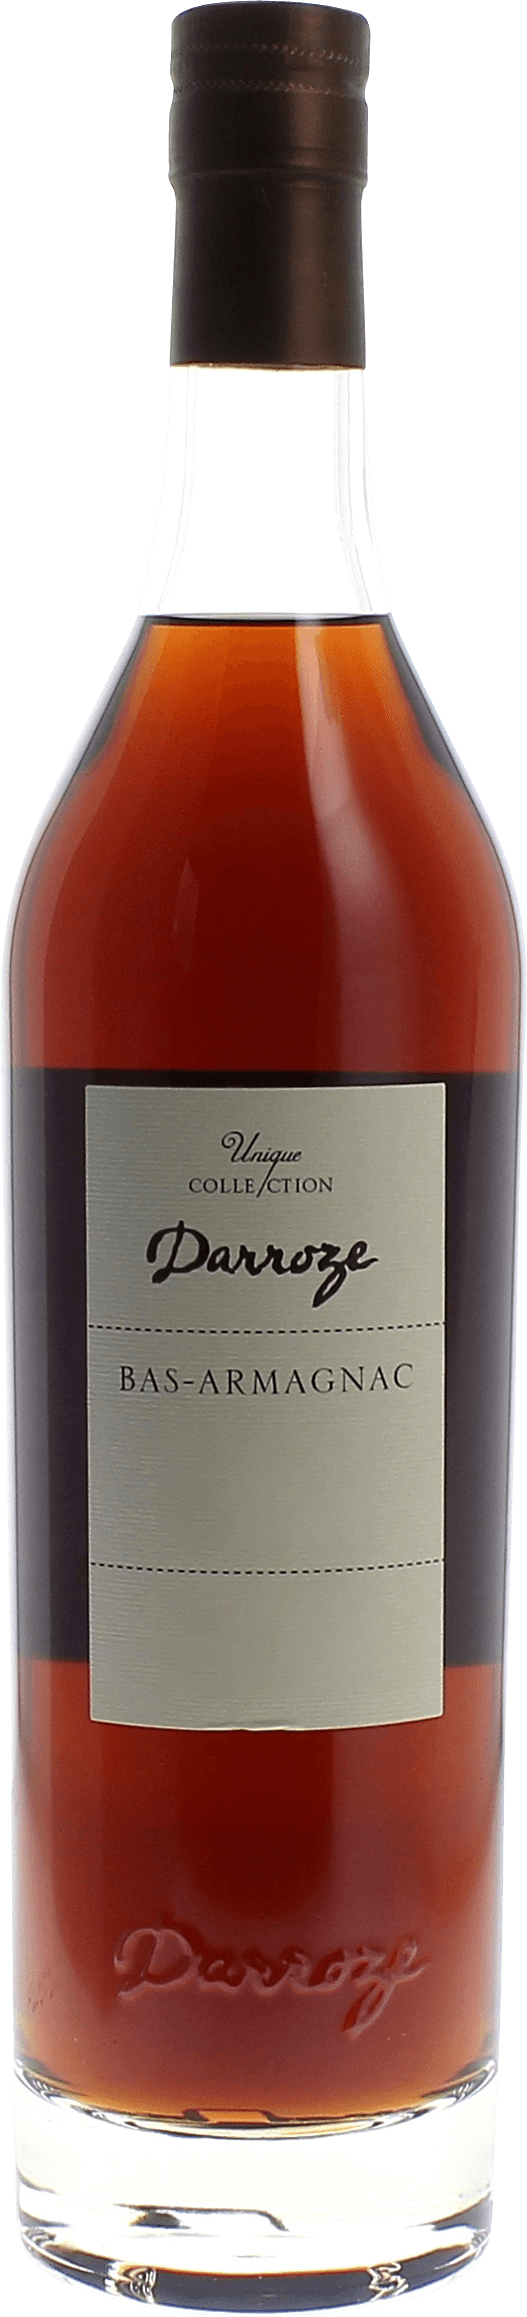 Domaine de monturon 42,5 1987  Bas Armagnac, DARROZE  Francis Bas Armagnac